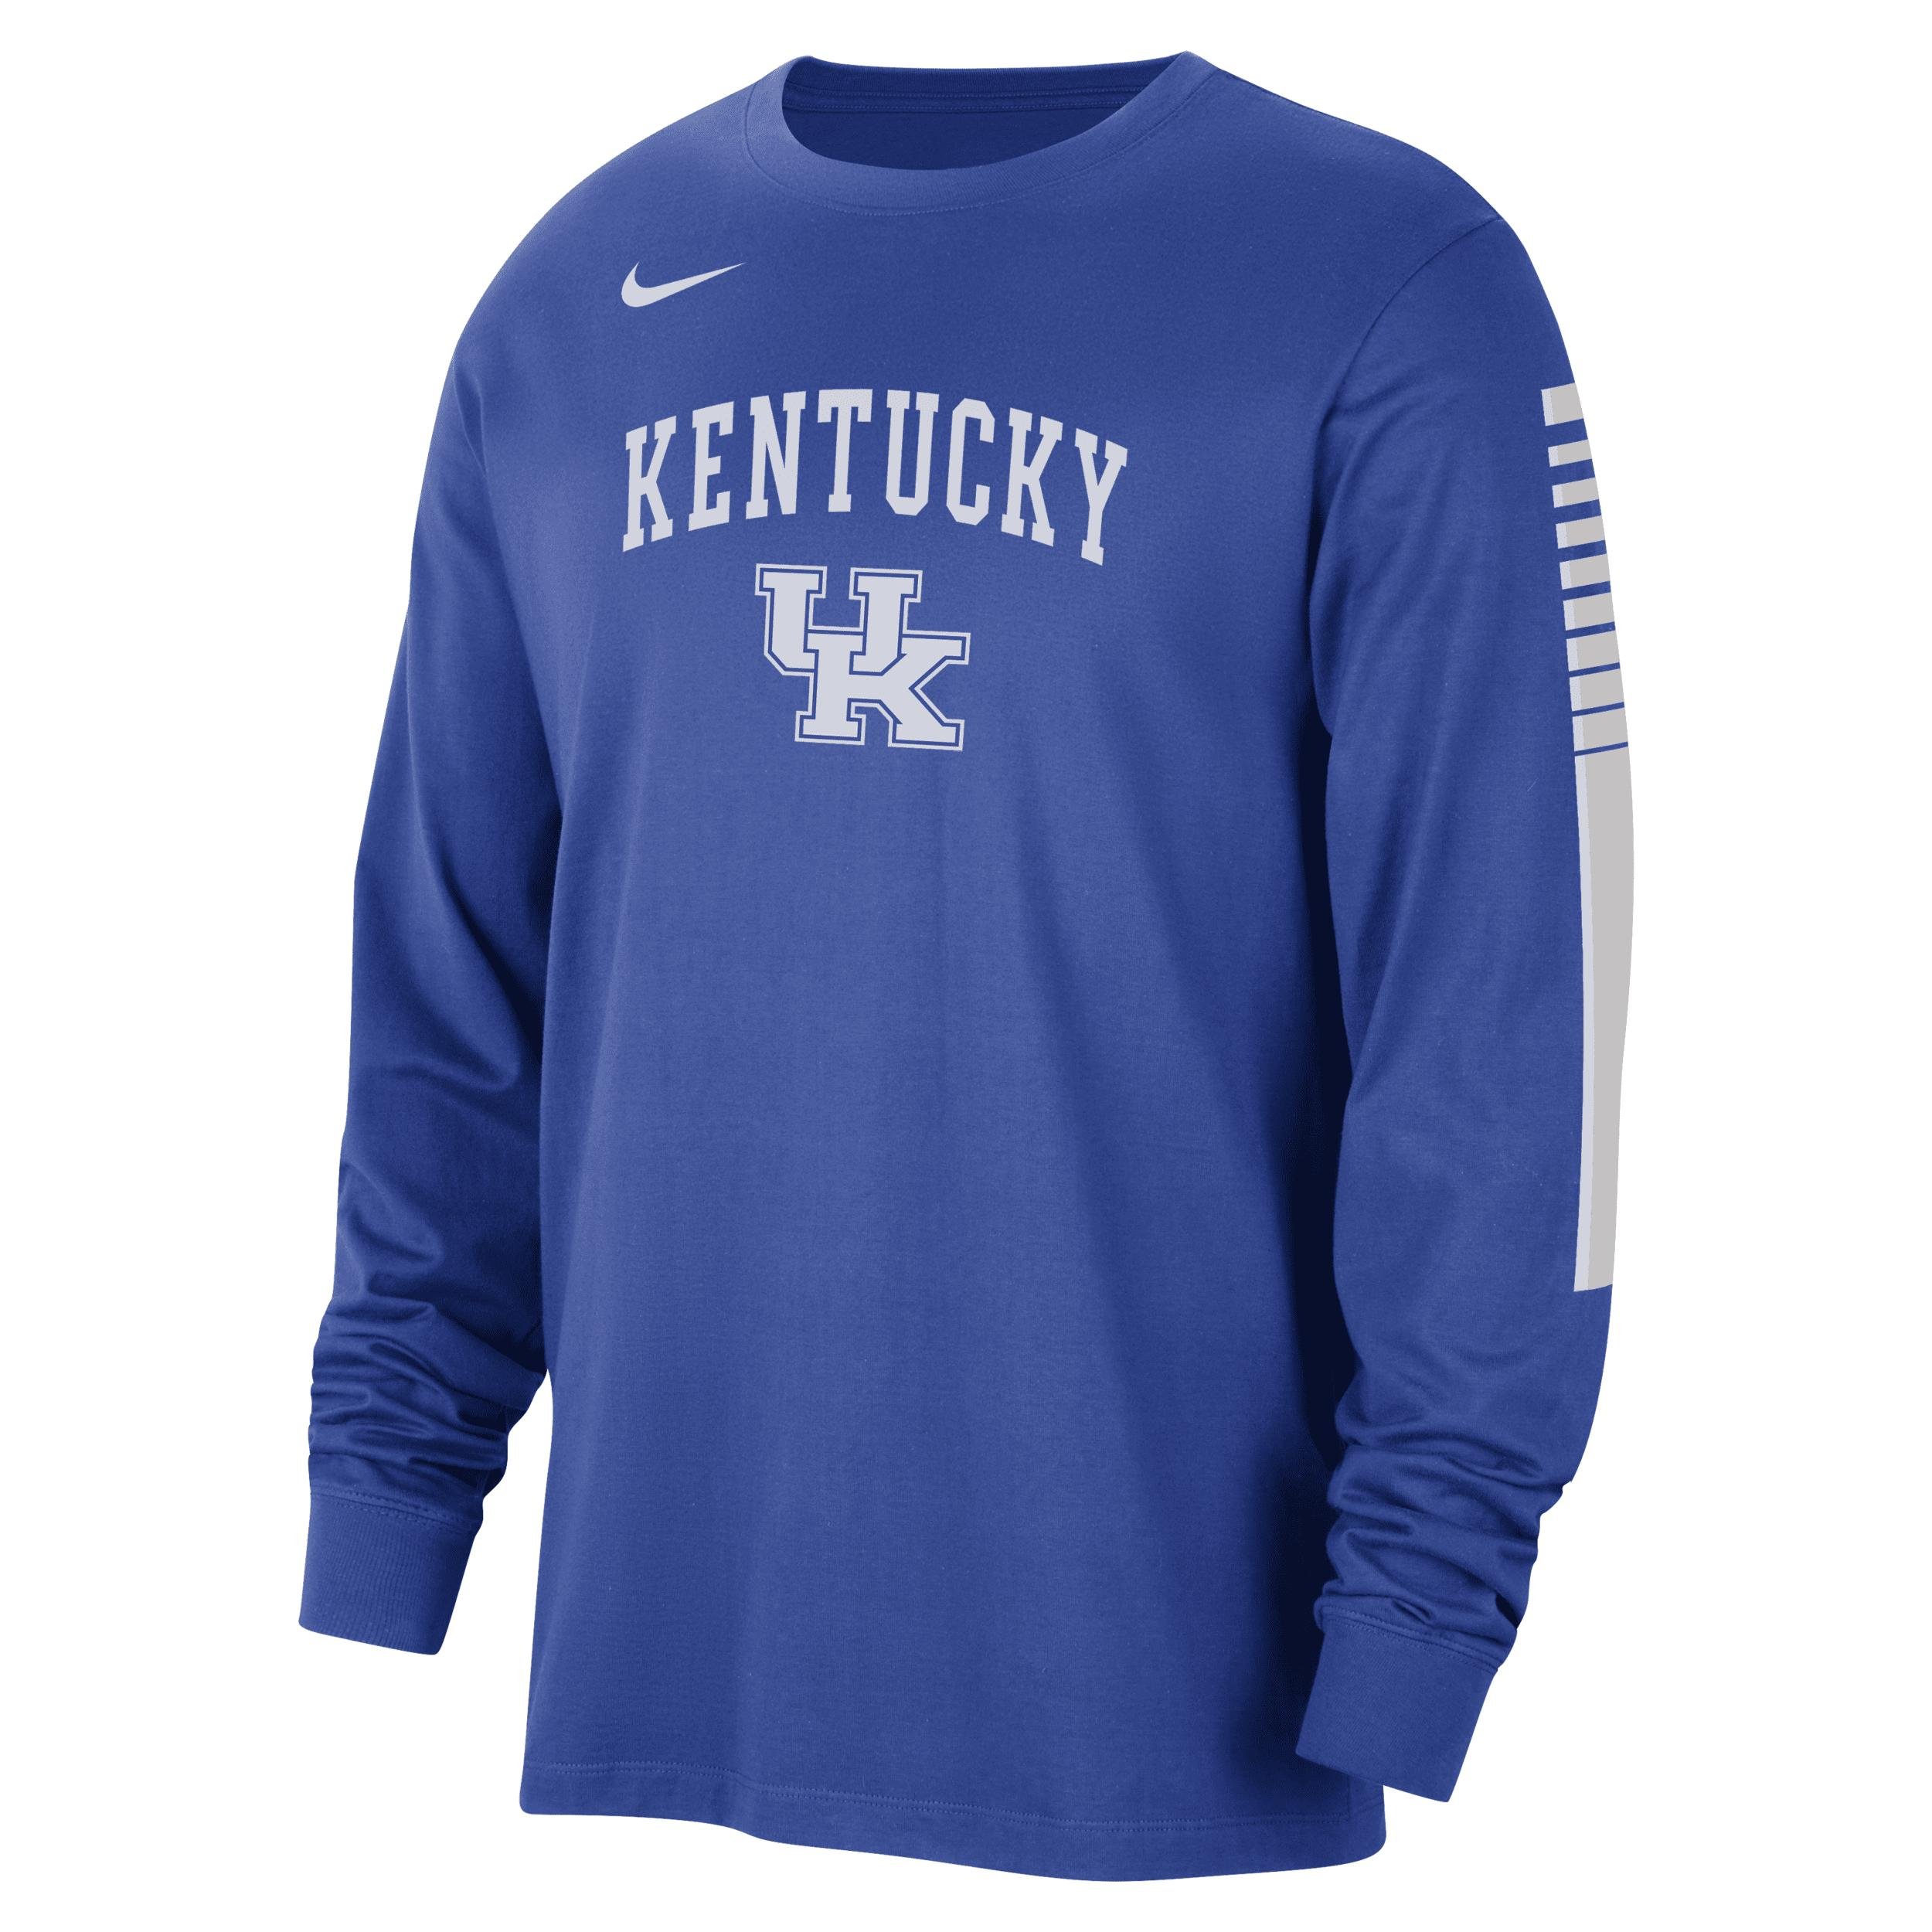 Kentucky Nike Men's College Long-Sleeve T-Shirt by NIKE